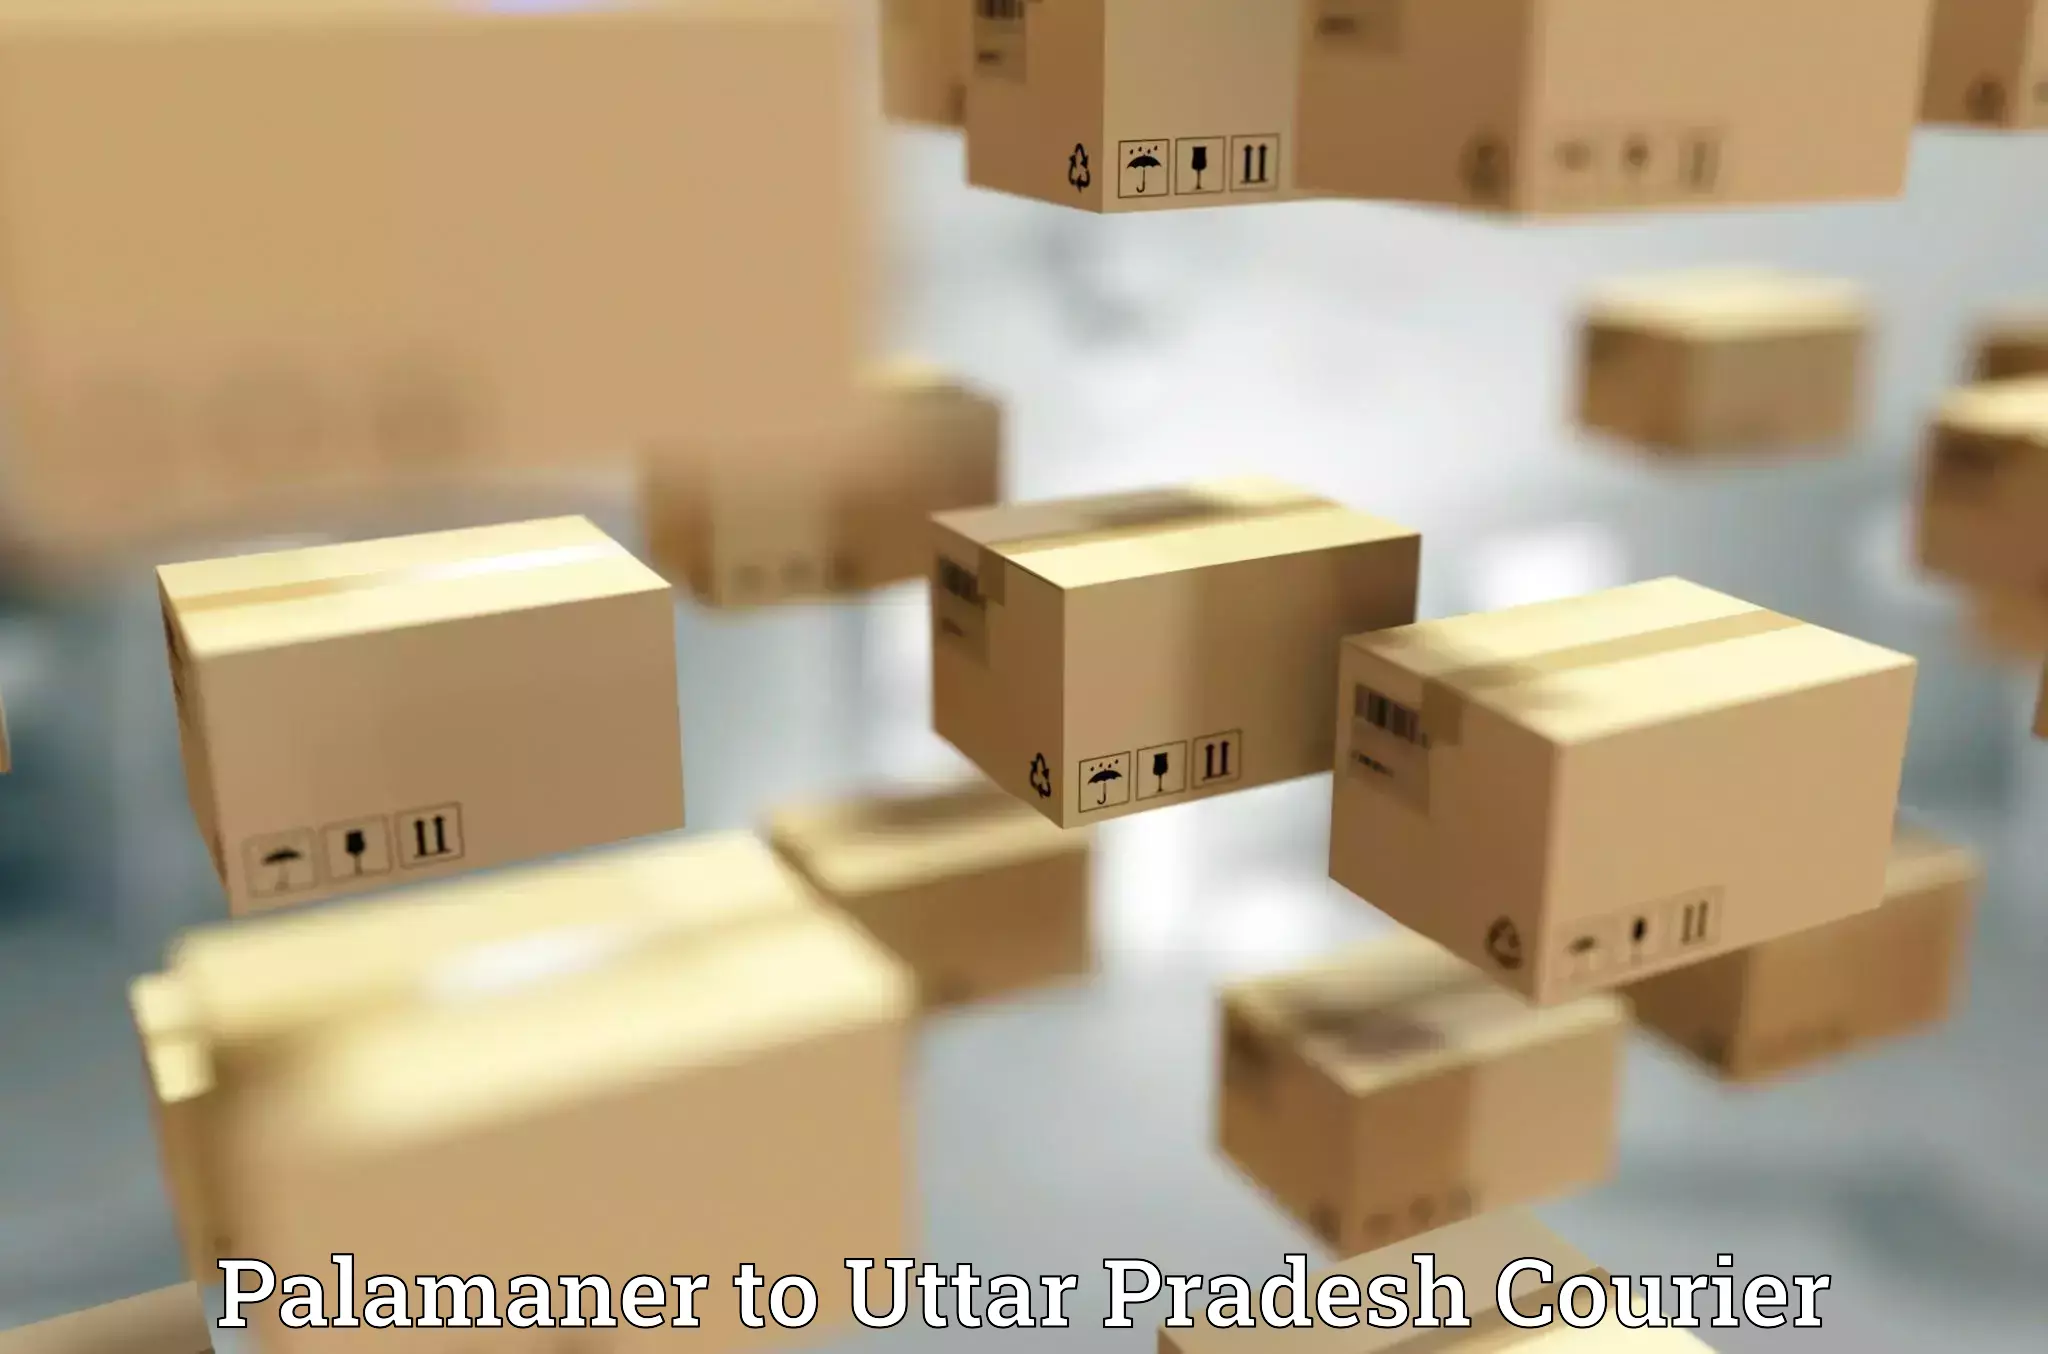 Package tracking Palamaner to Uttar Pradesh